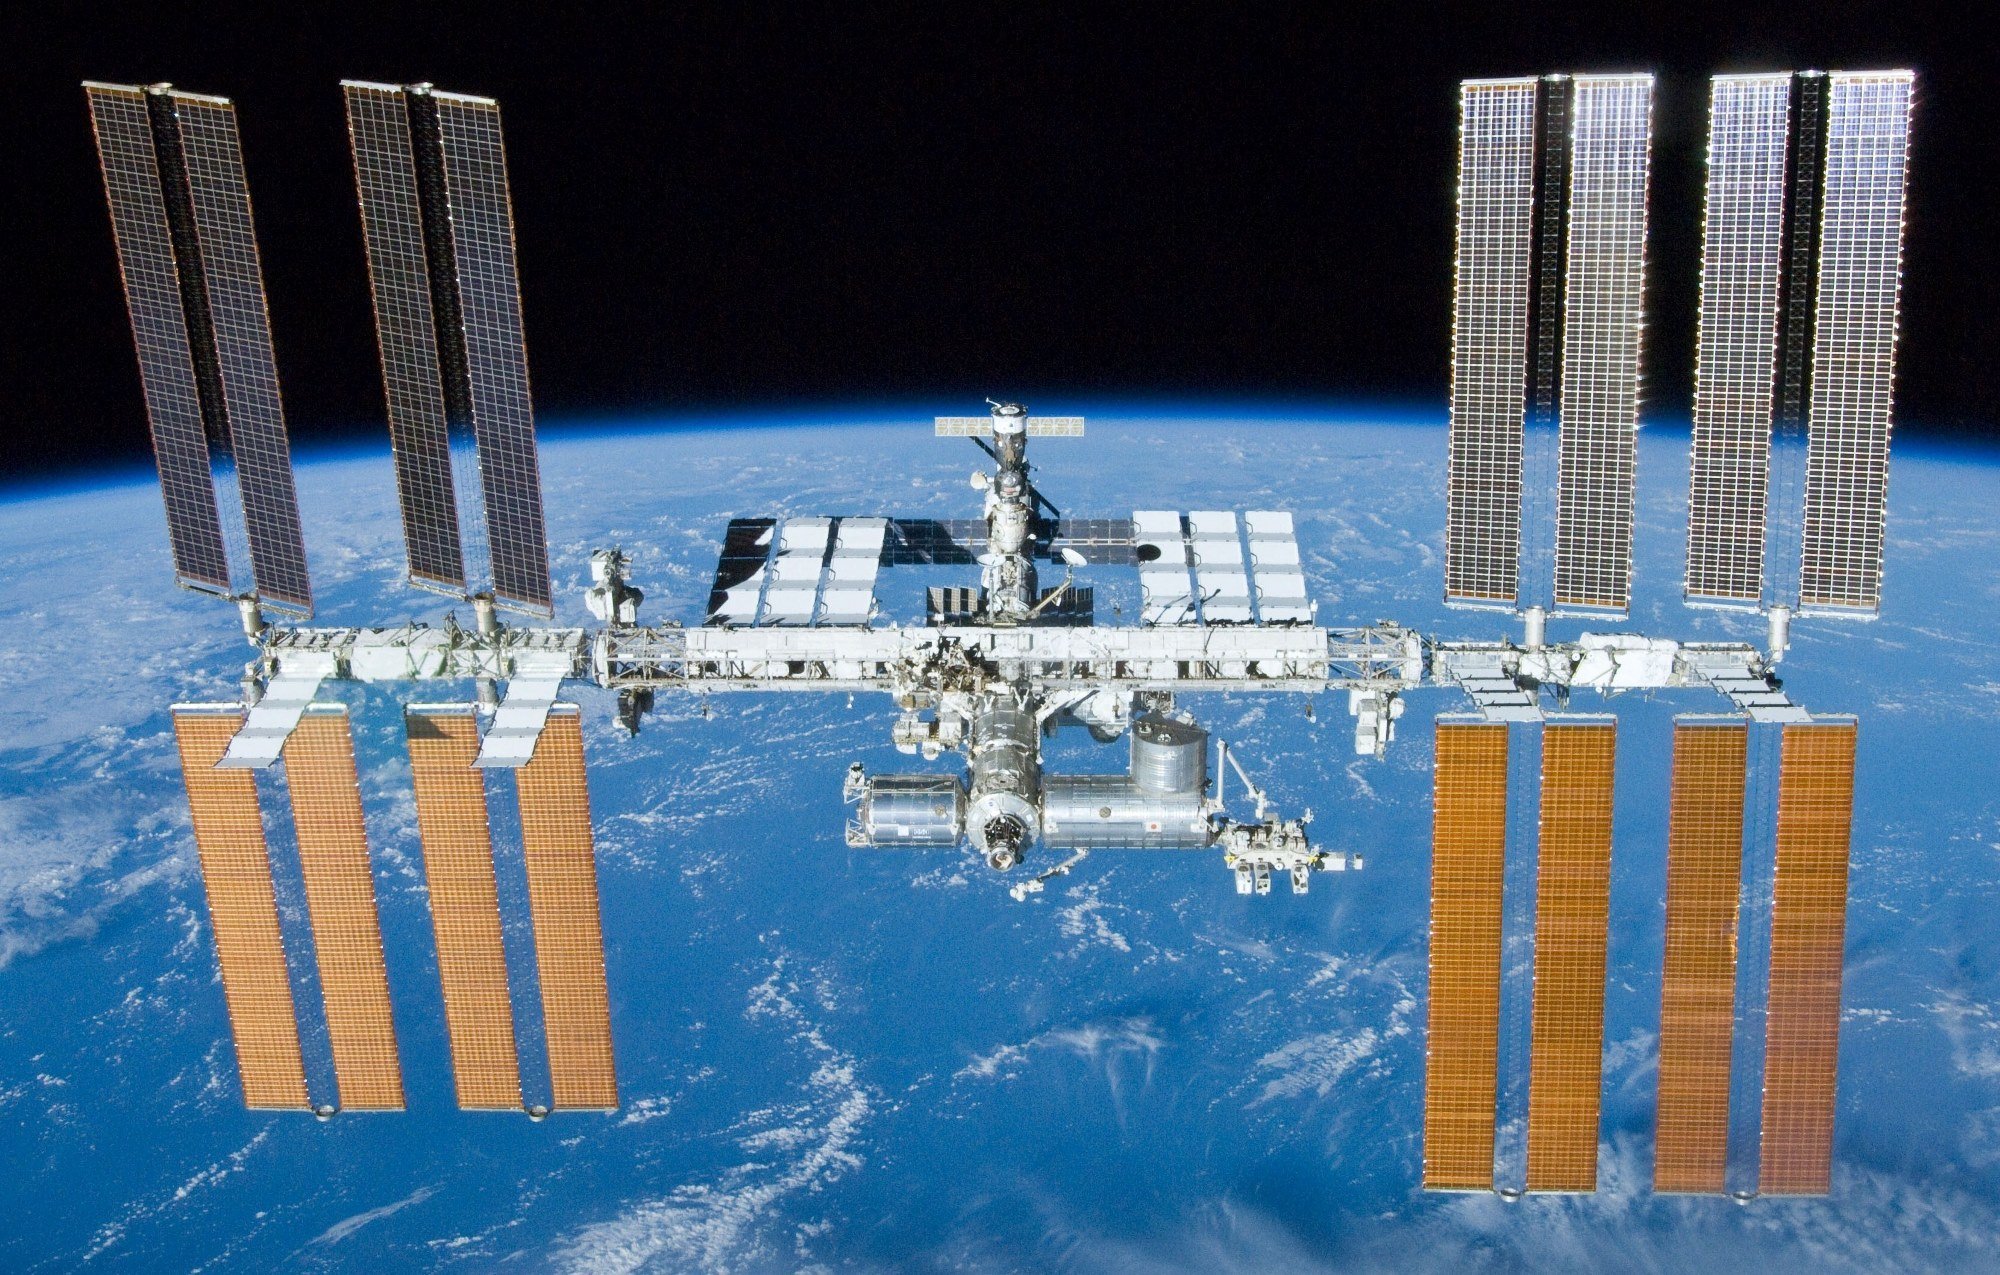 O problemă de software a provocat repornirea neprevăzută a motoarelor unui modul care a destabilizat ISS pe orbită, anunţă Rusia